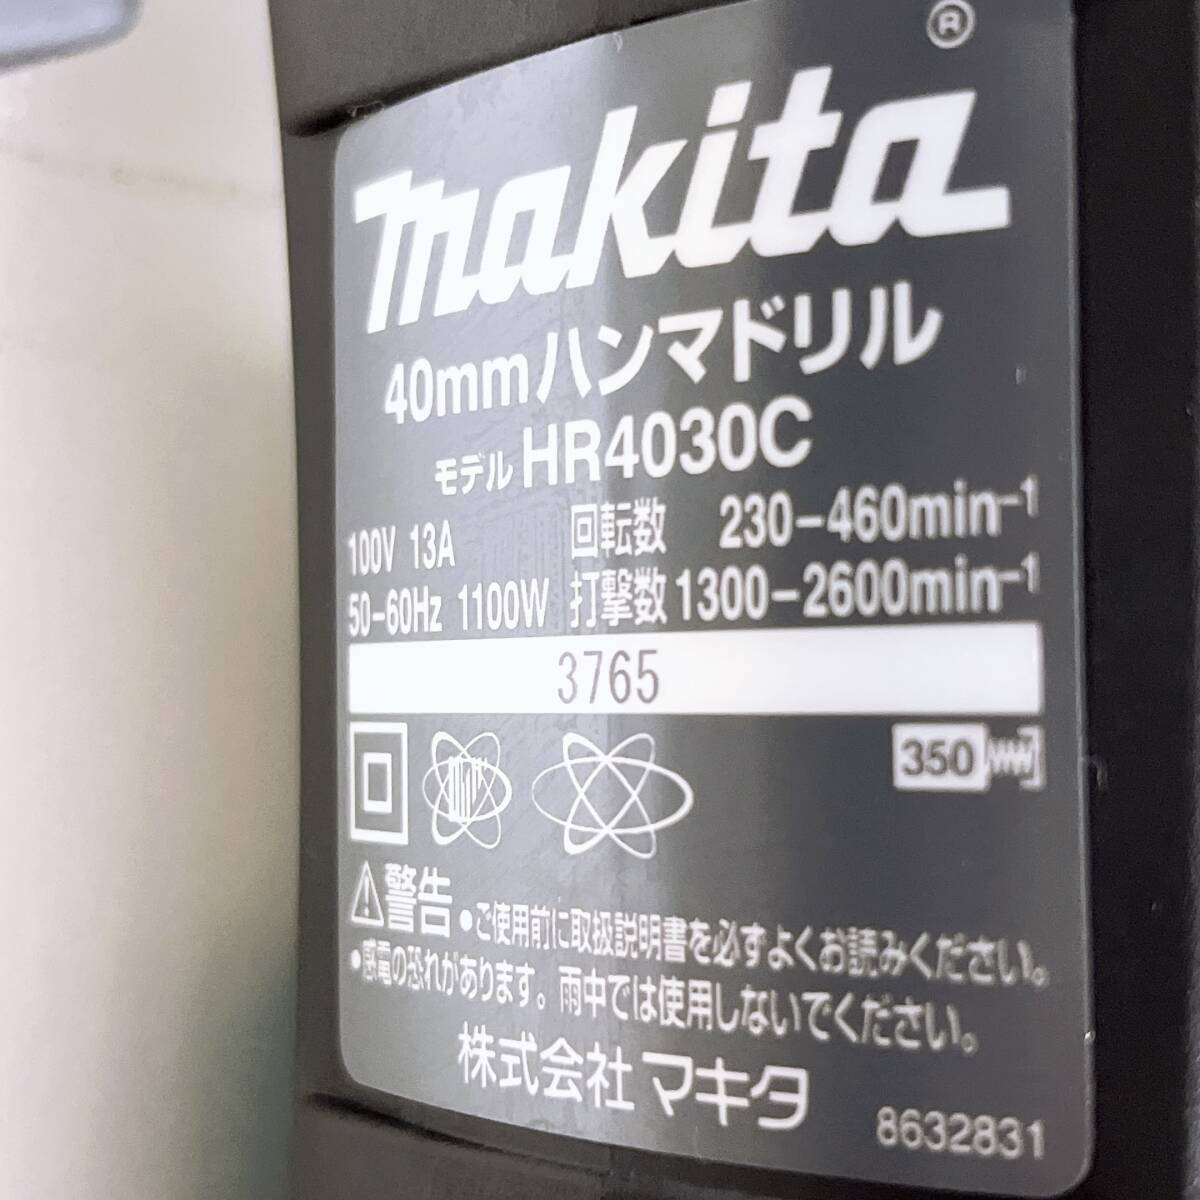  рабочее состояние подтверждено Makita MAKITA ударная дрель HR4030C б/у с футляром ( регистрация название есть )